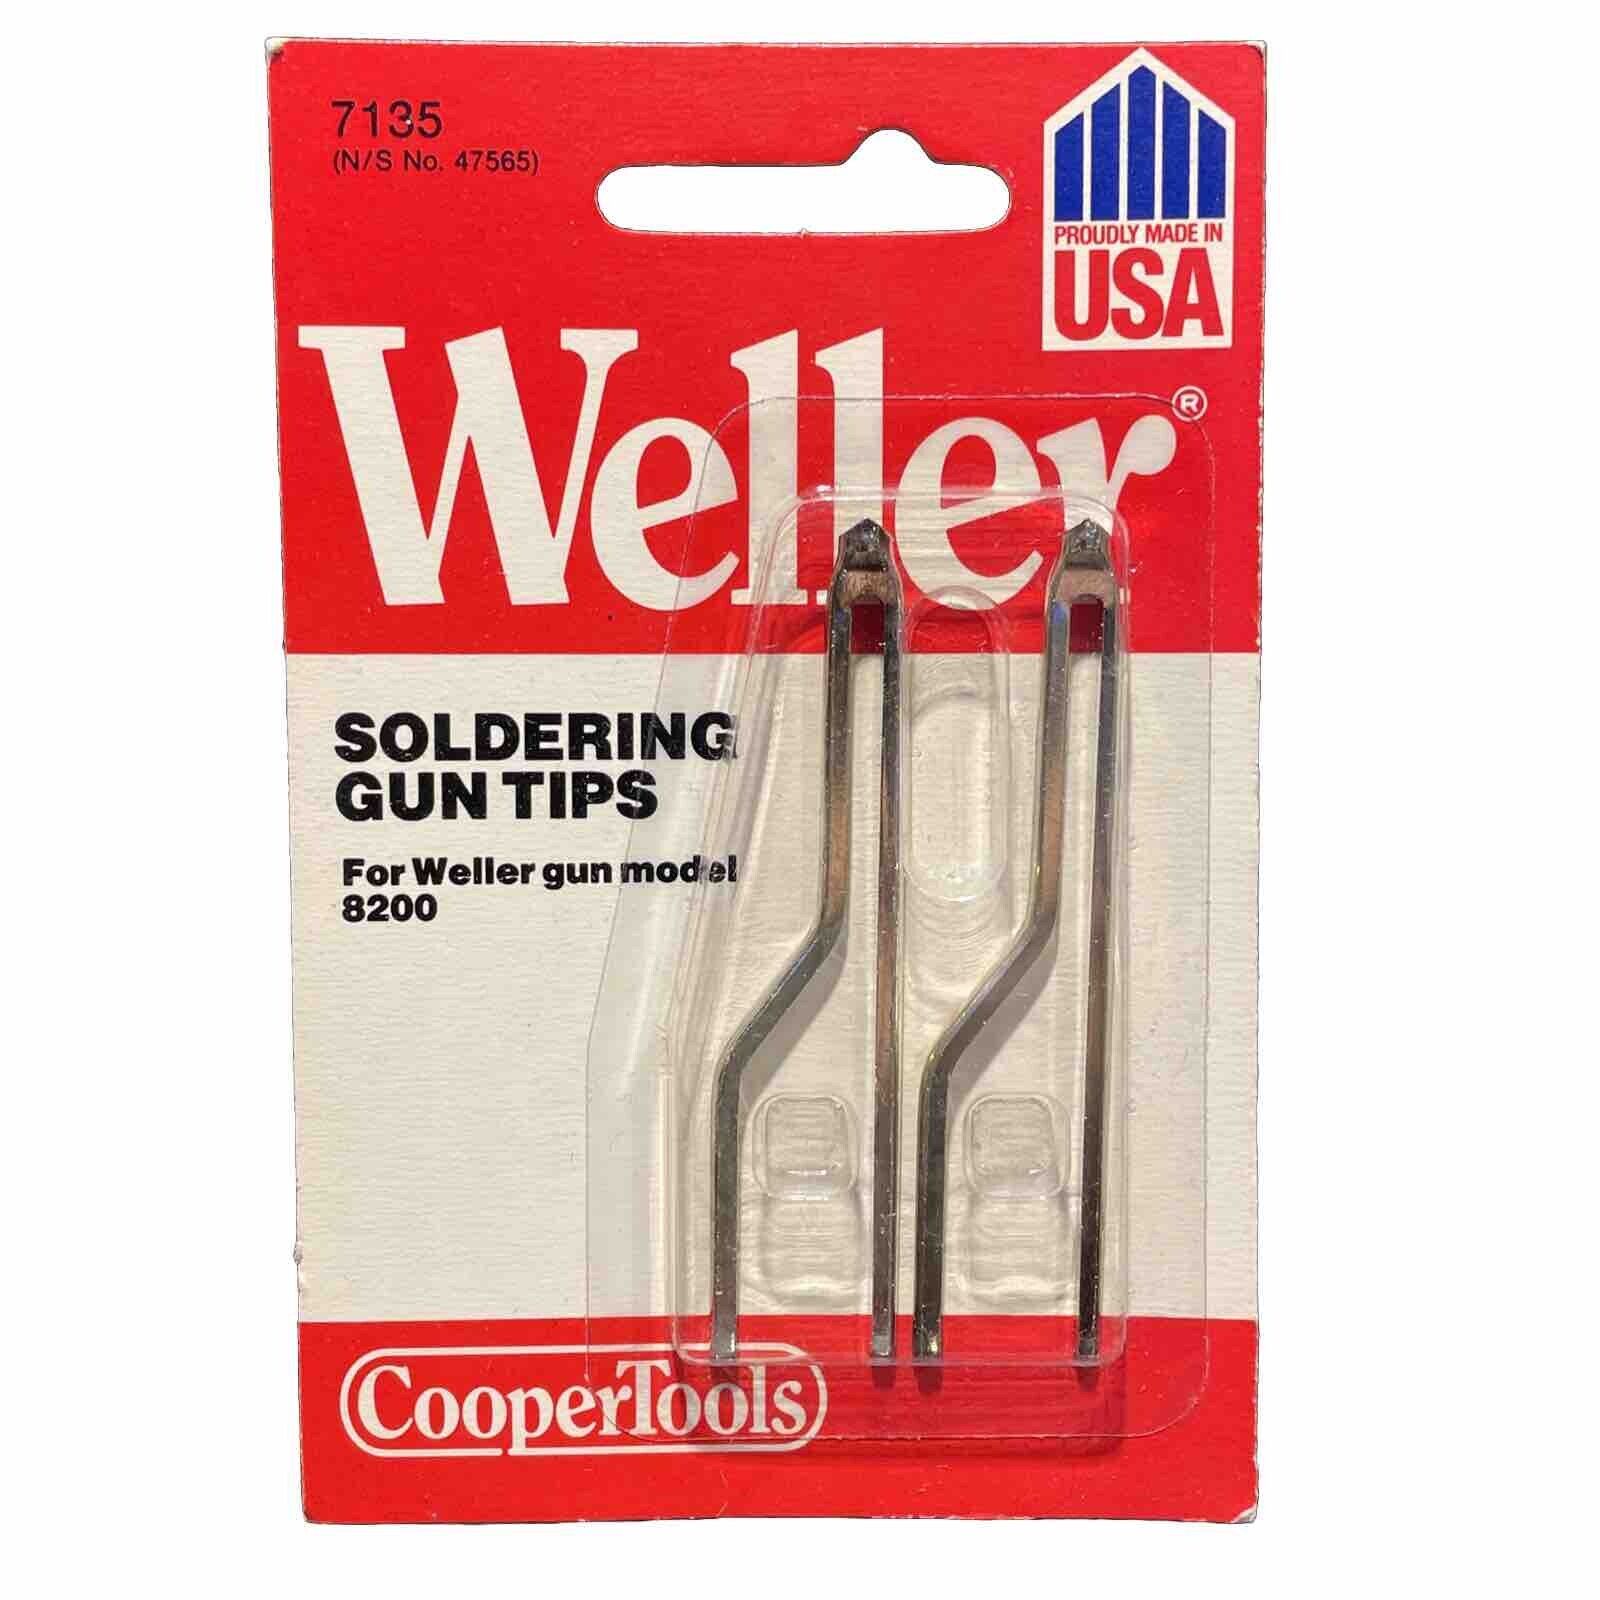 Weller Soldering Gun Replacement Tip Fits Model 8200 NOS Soldering Iron Tips